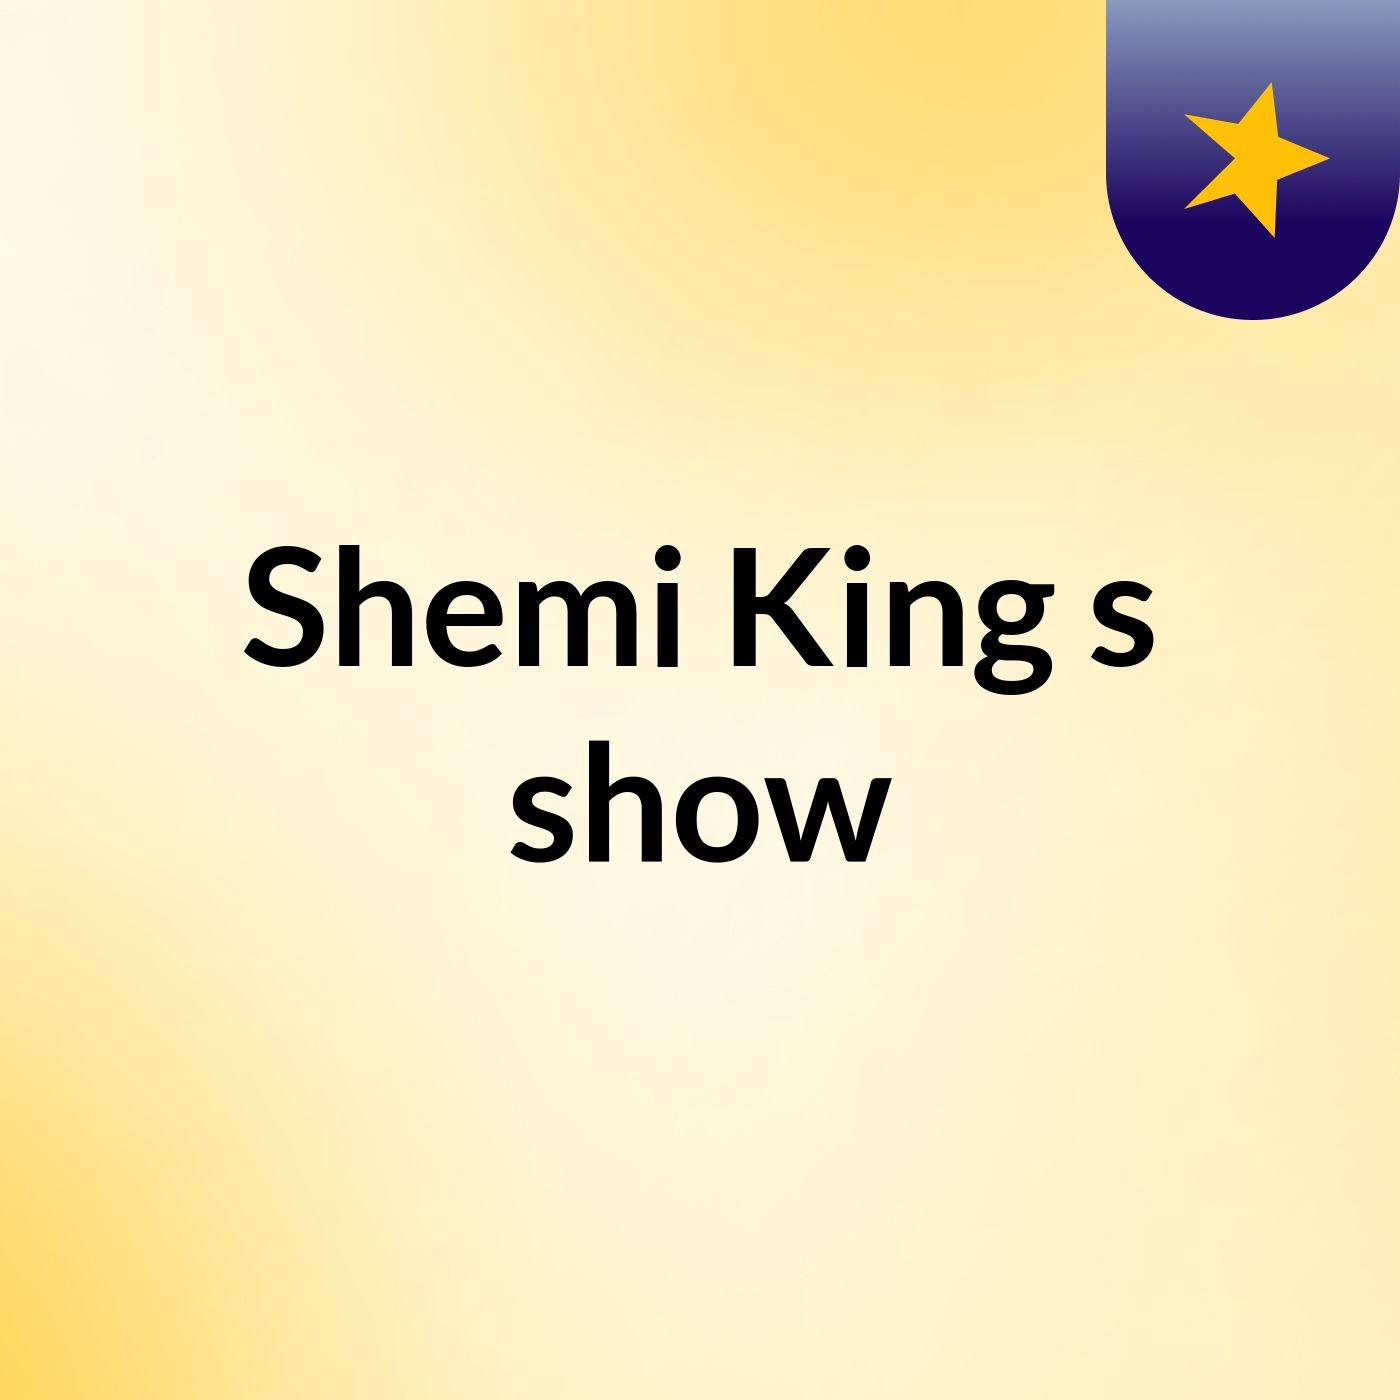 Shemi King's show